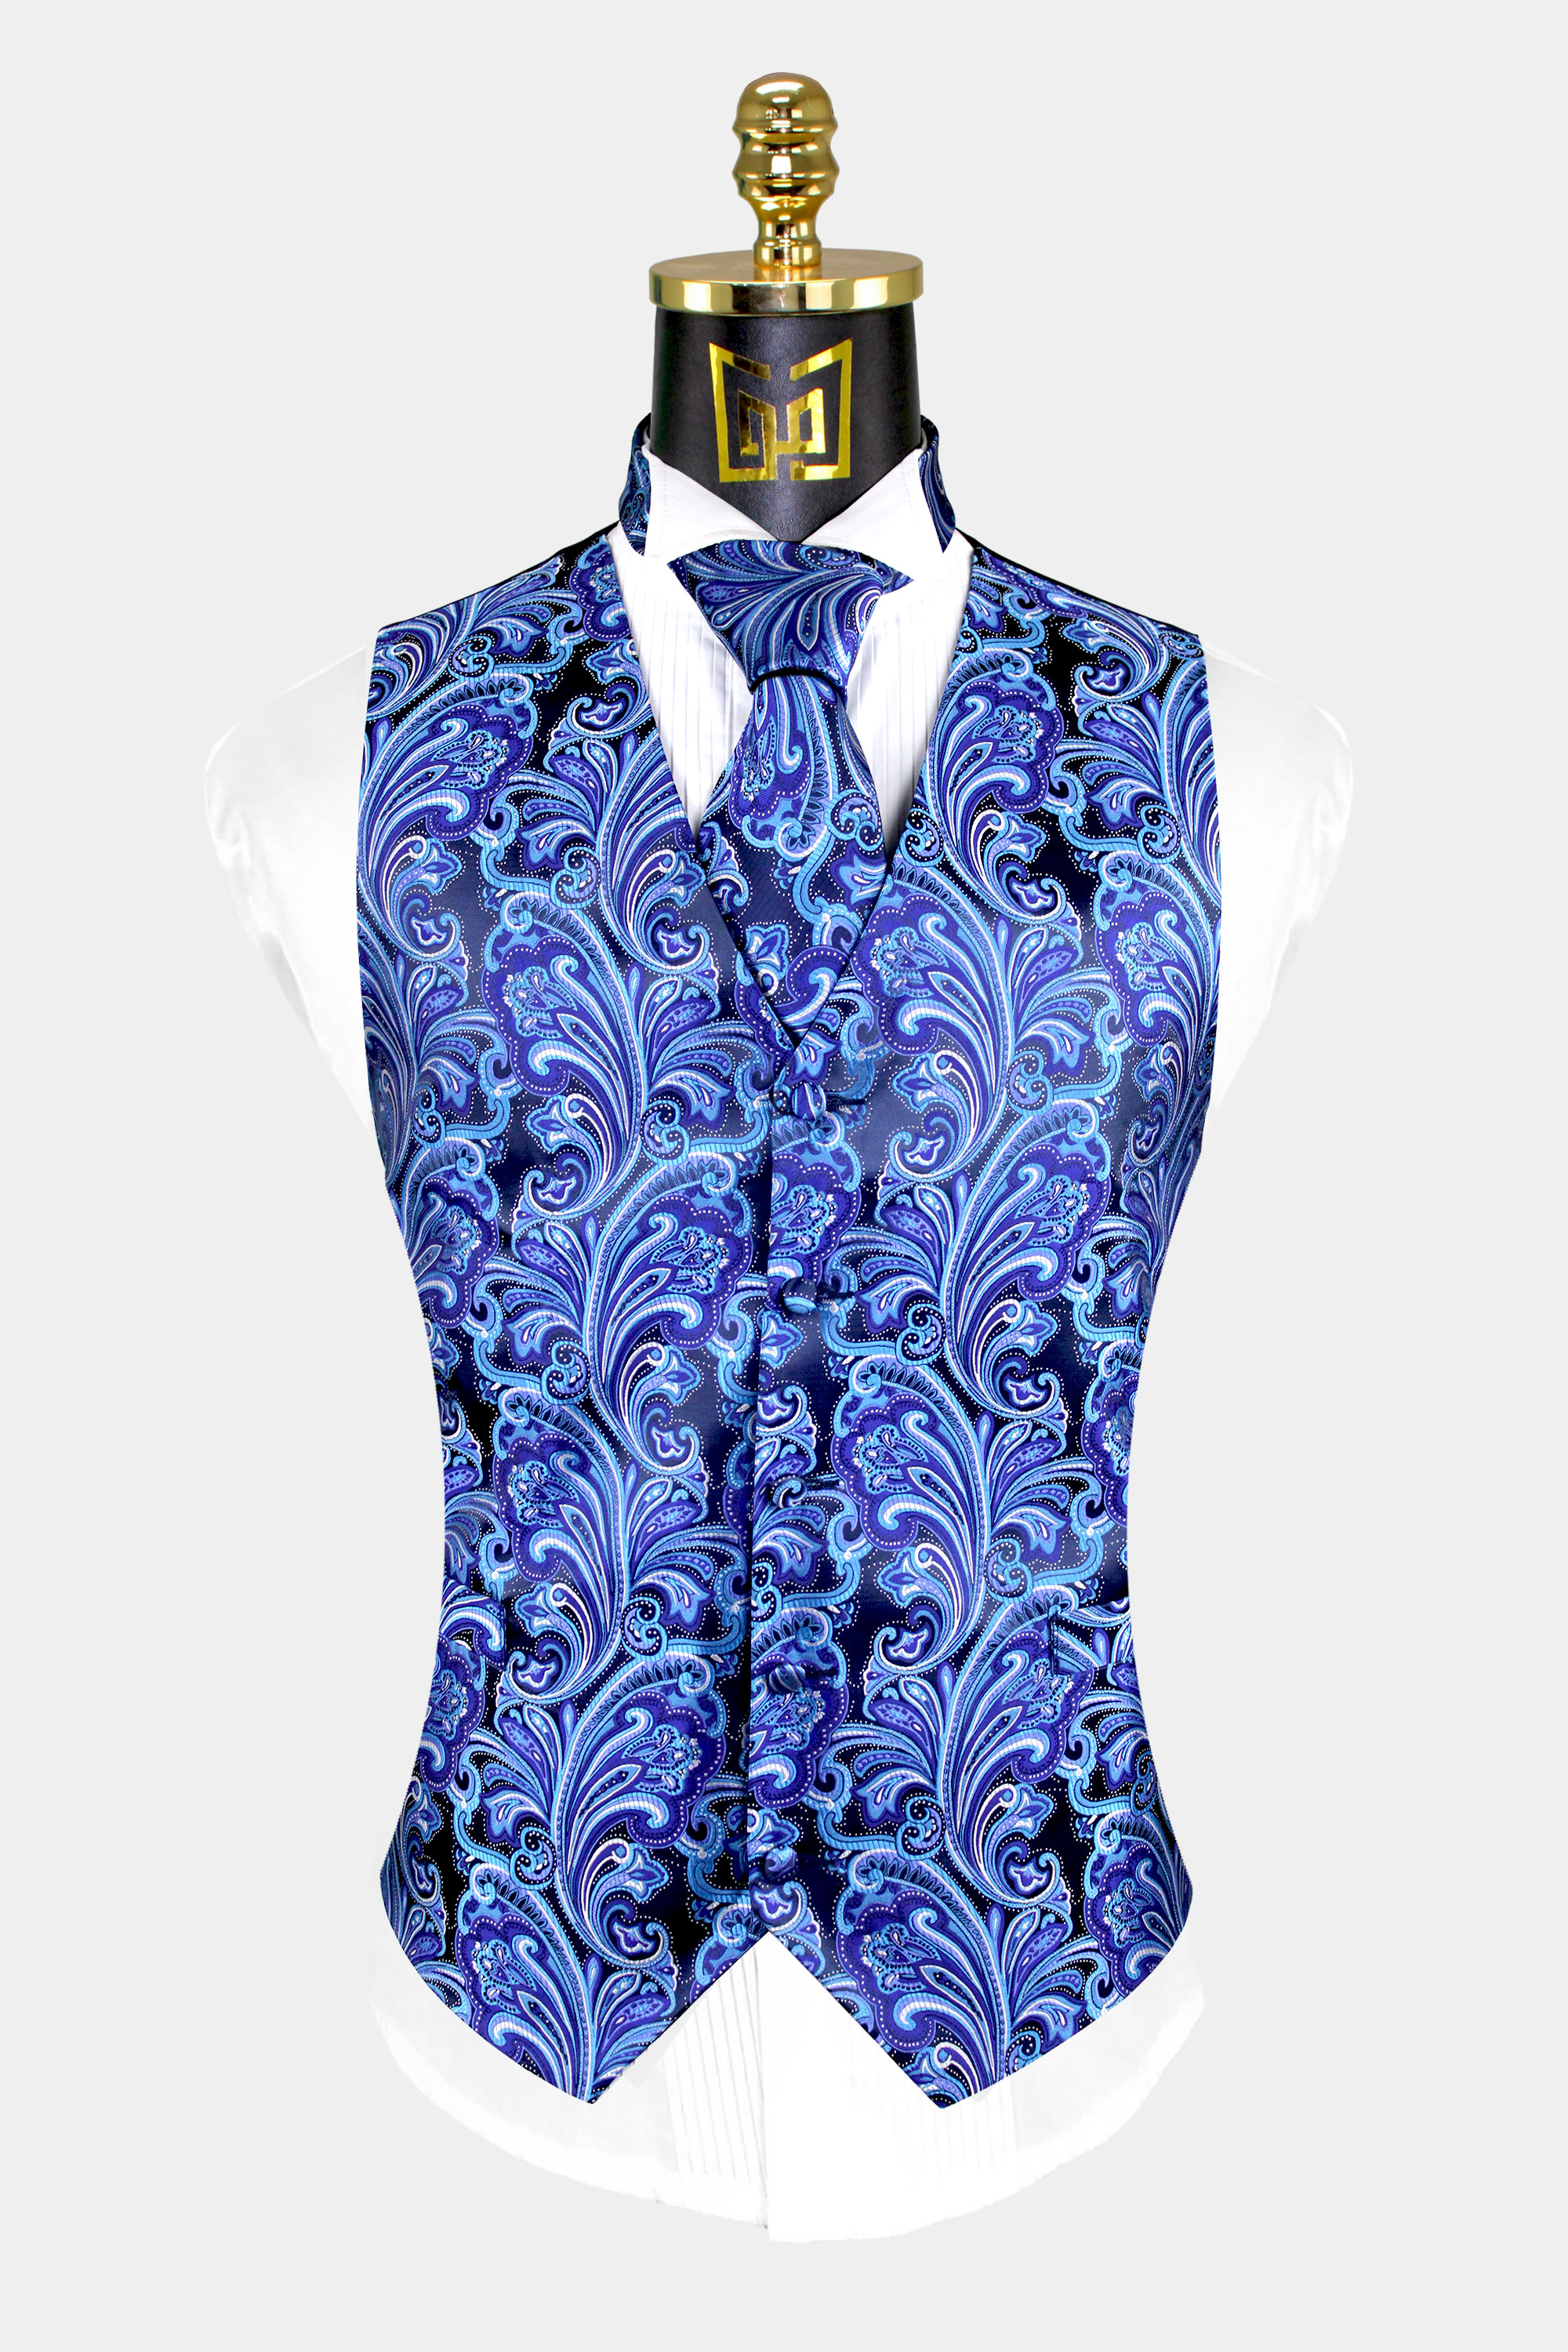 Mens-Aqua-Blue-Vest-and-Tie-Set-Tuxedo-Groom-Wedding-Suit-Vest-from-Gentlemansguru.com